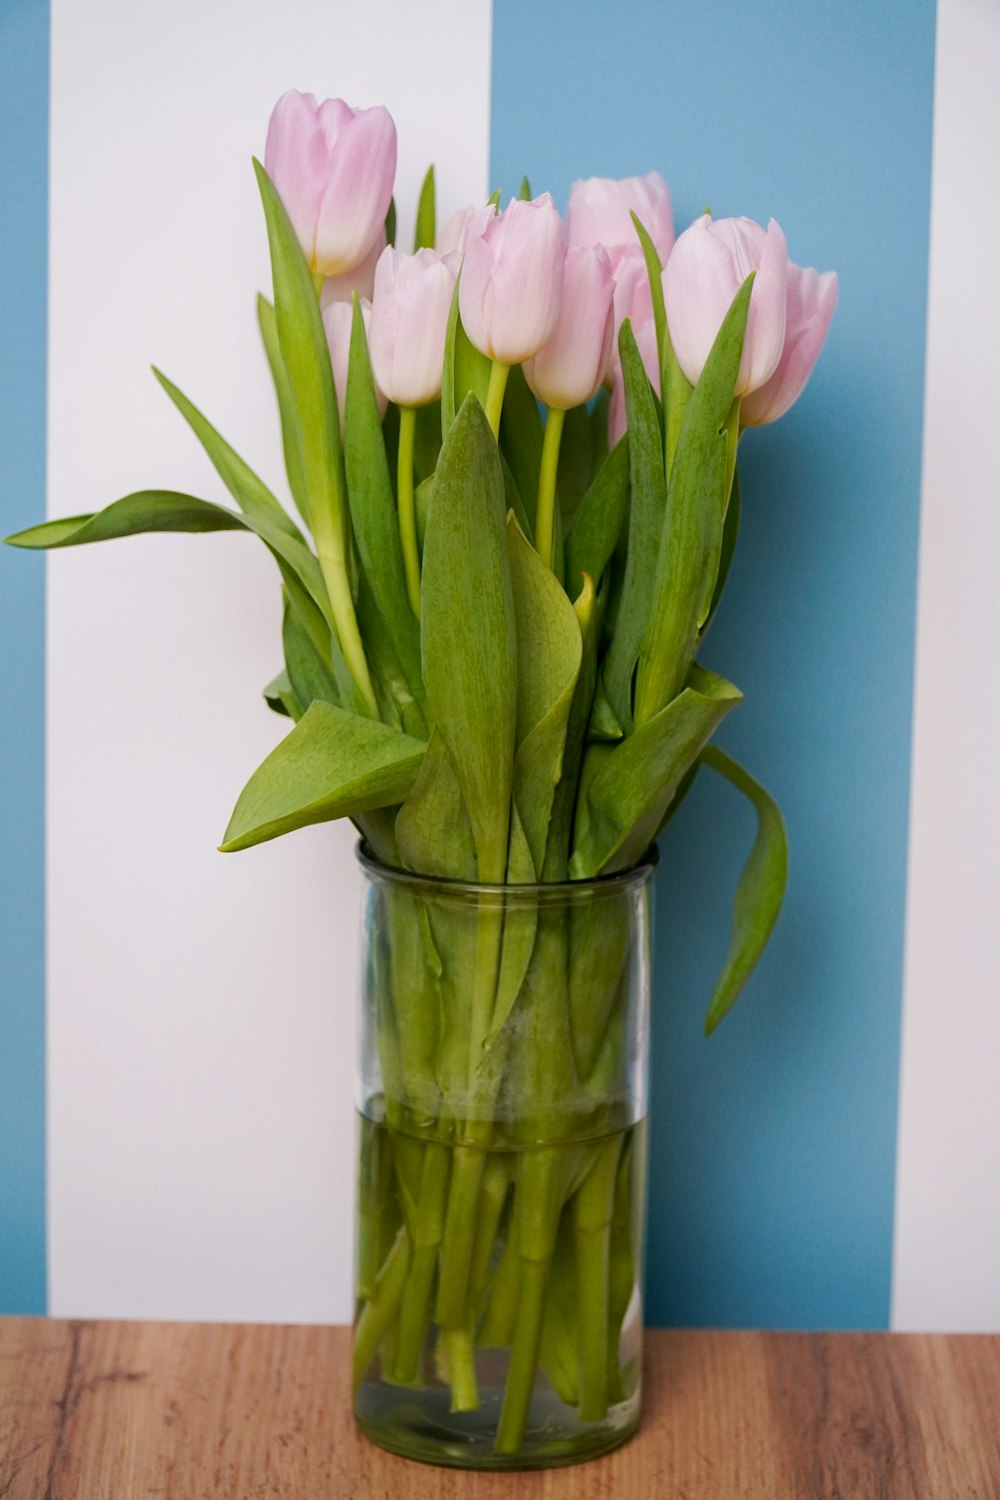 Un jarrón de vidrio lleno de tulipanes rosados sobre una mesa